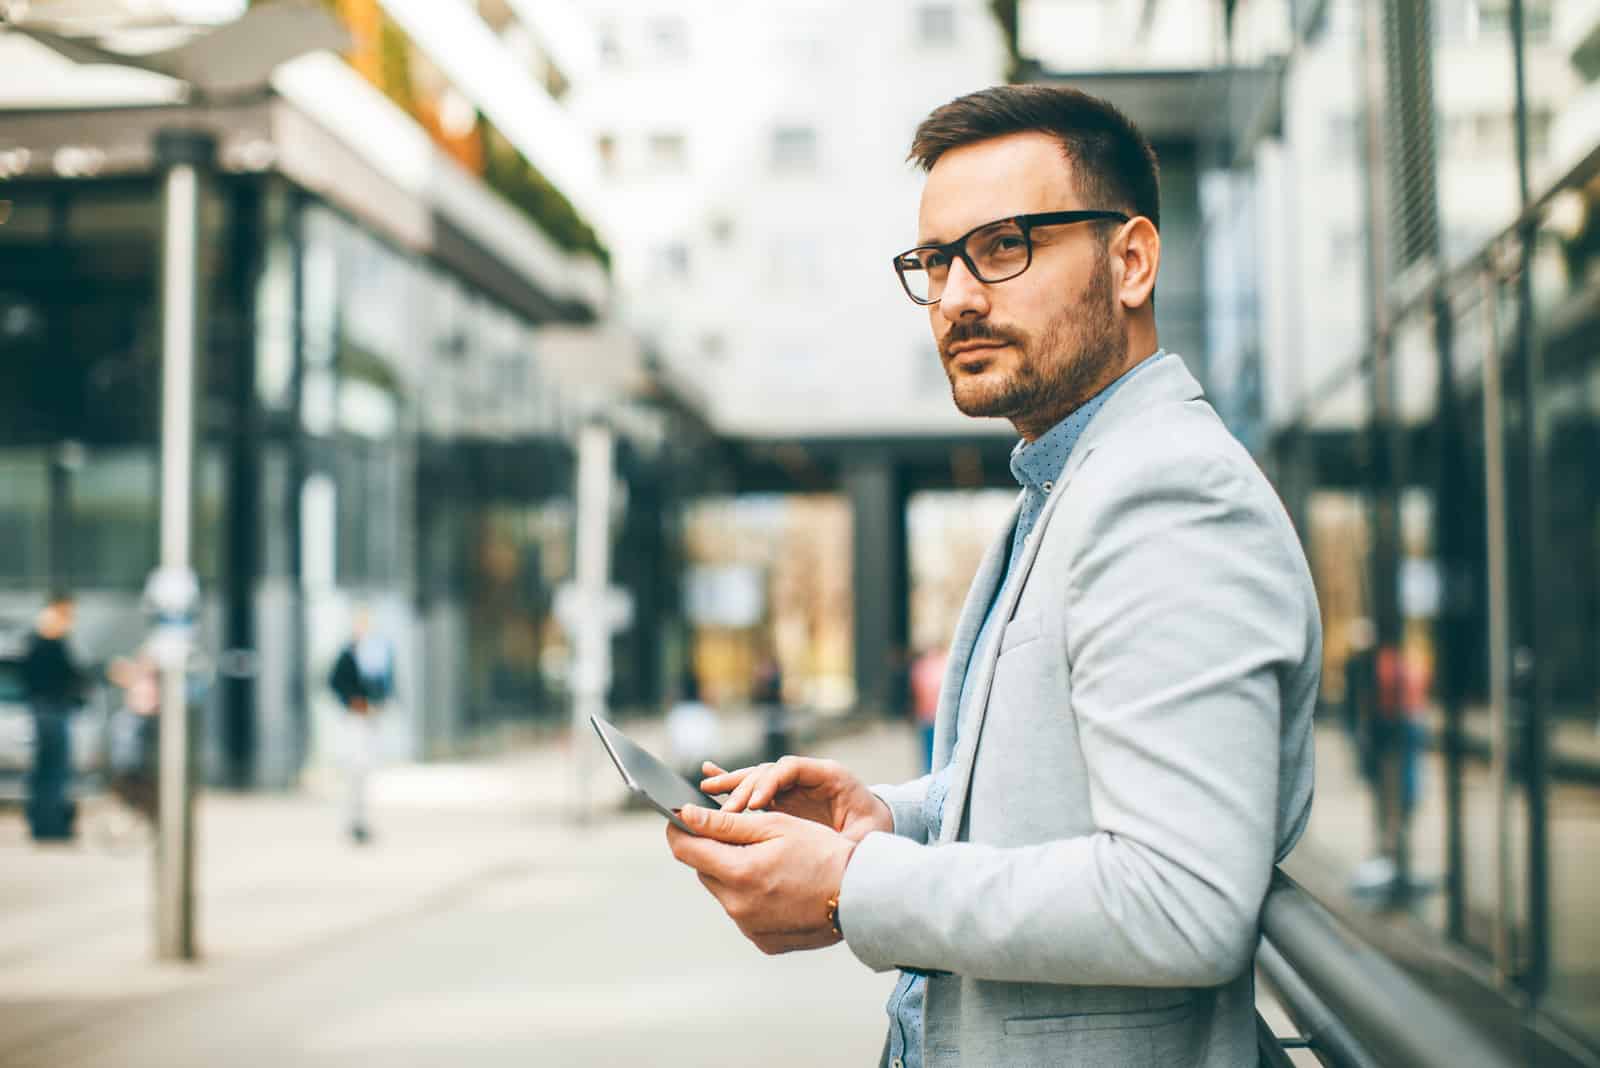 un homme se tient avec des lunettes tout en tenant un téléphone dans sa main